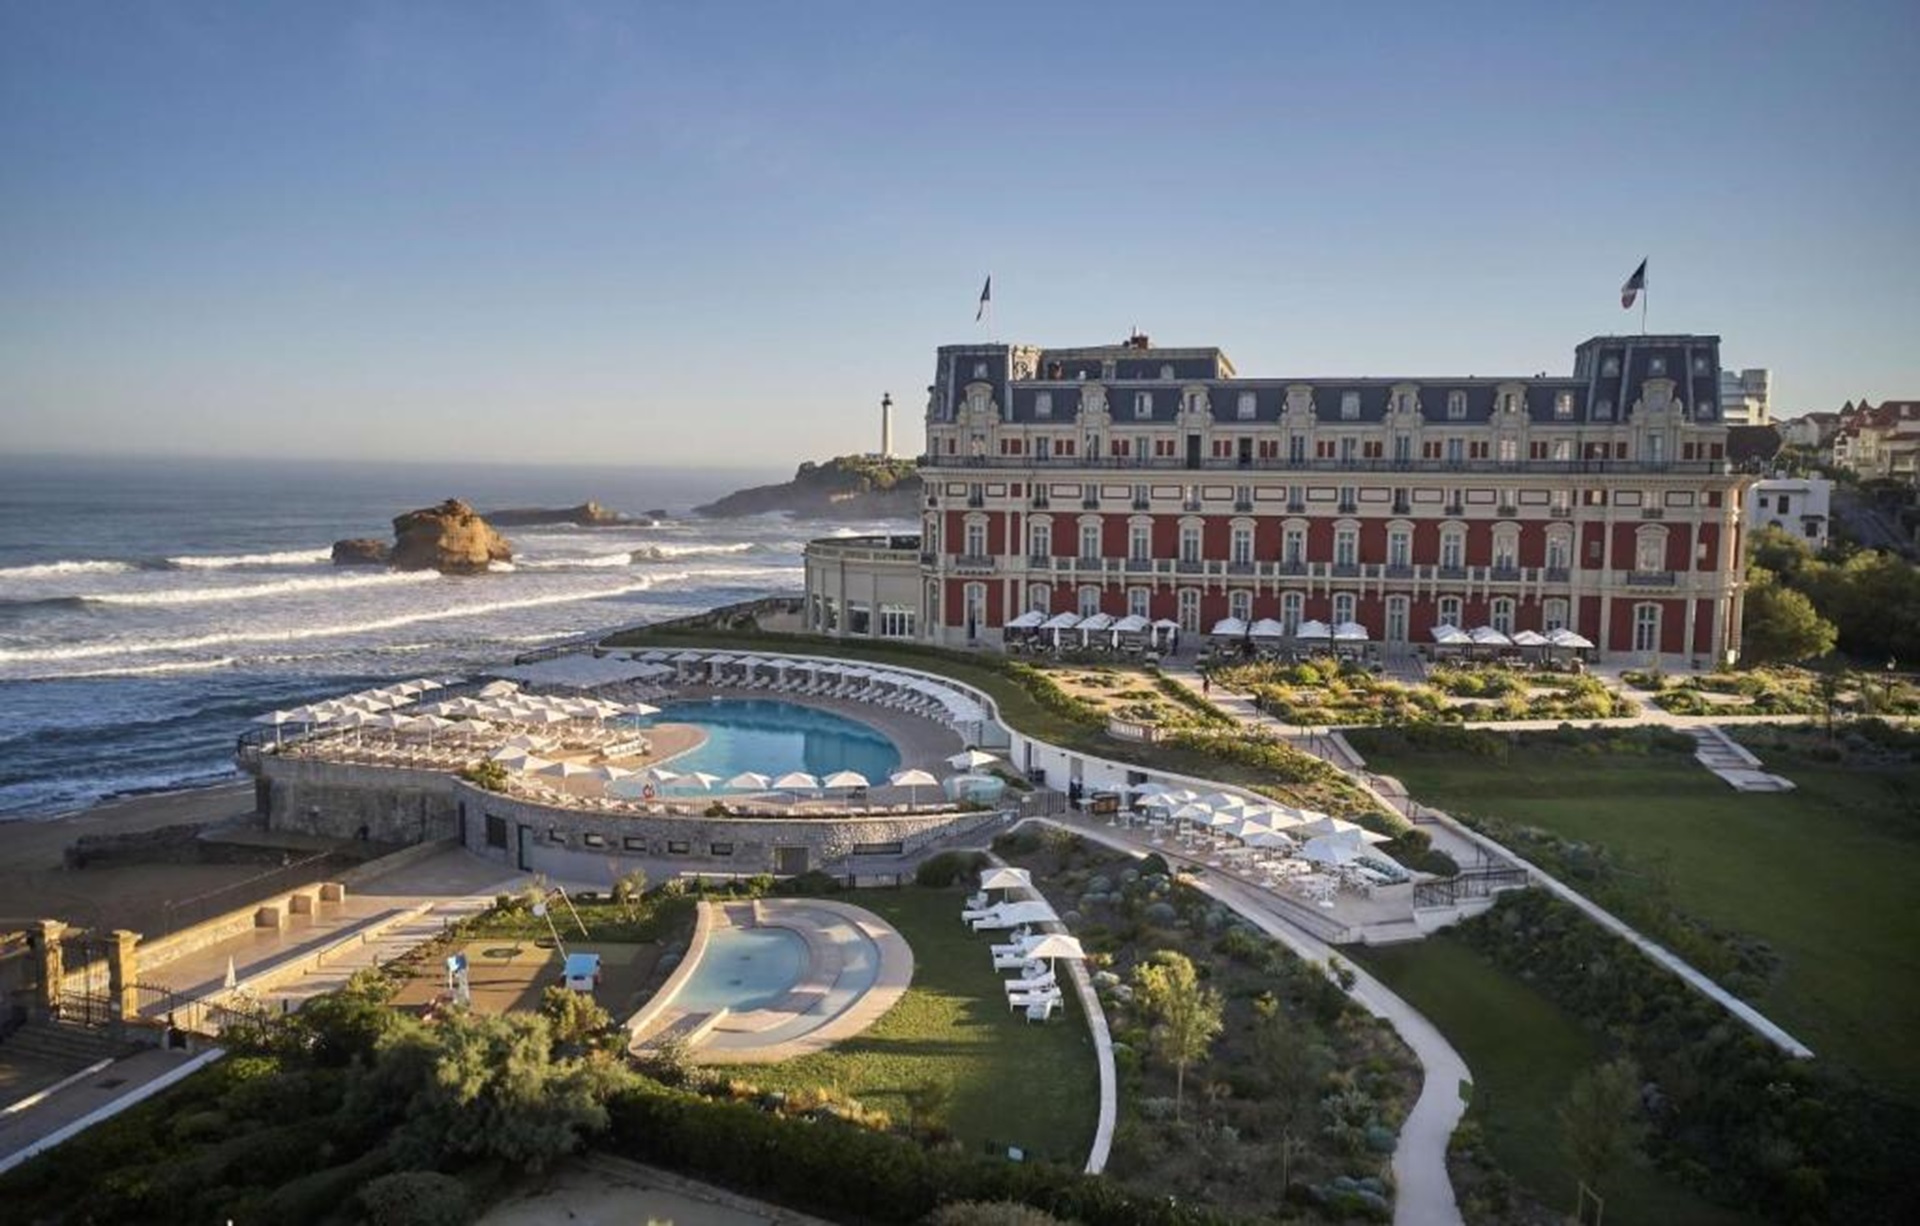 Escándalo en un hotel de lujo de Biarritz: despiden al chef por una "humillante novatada"